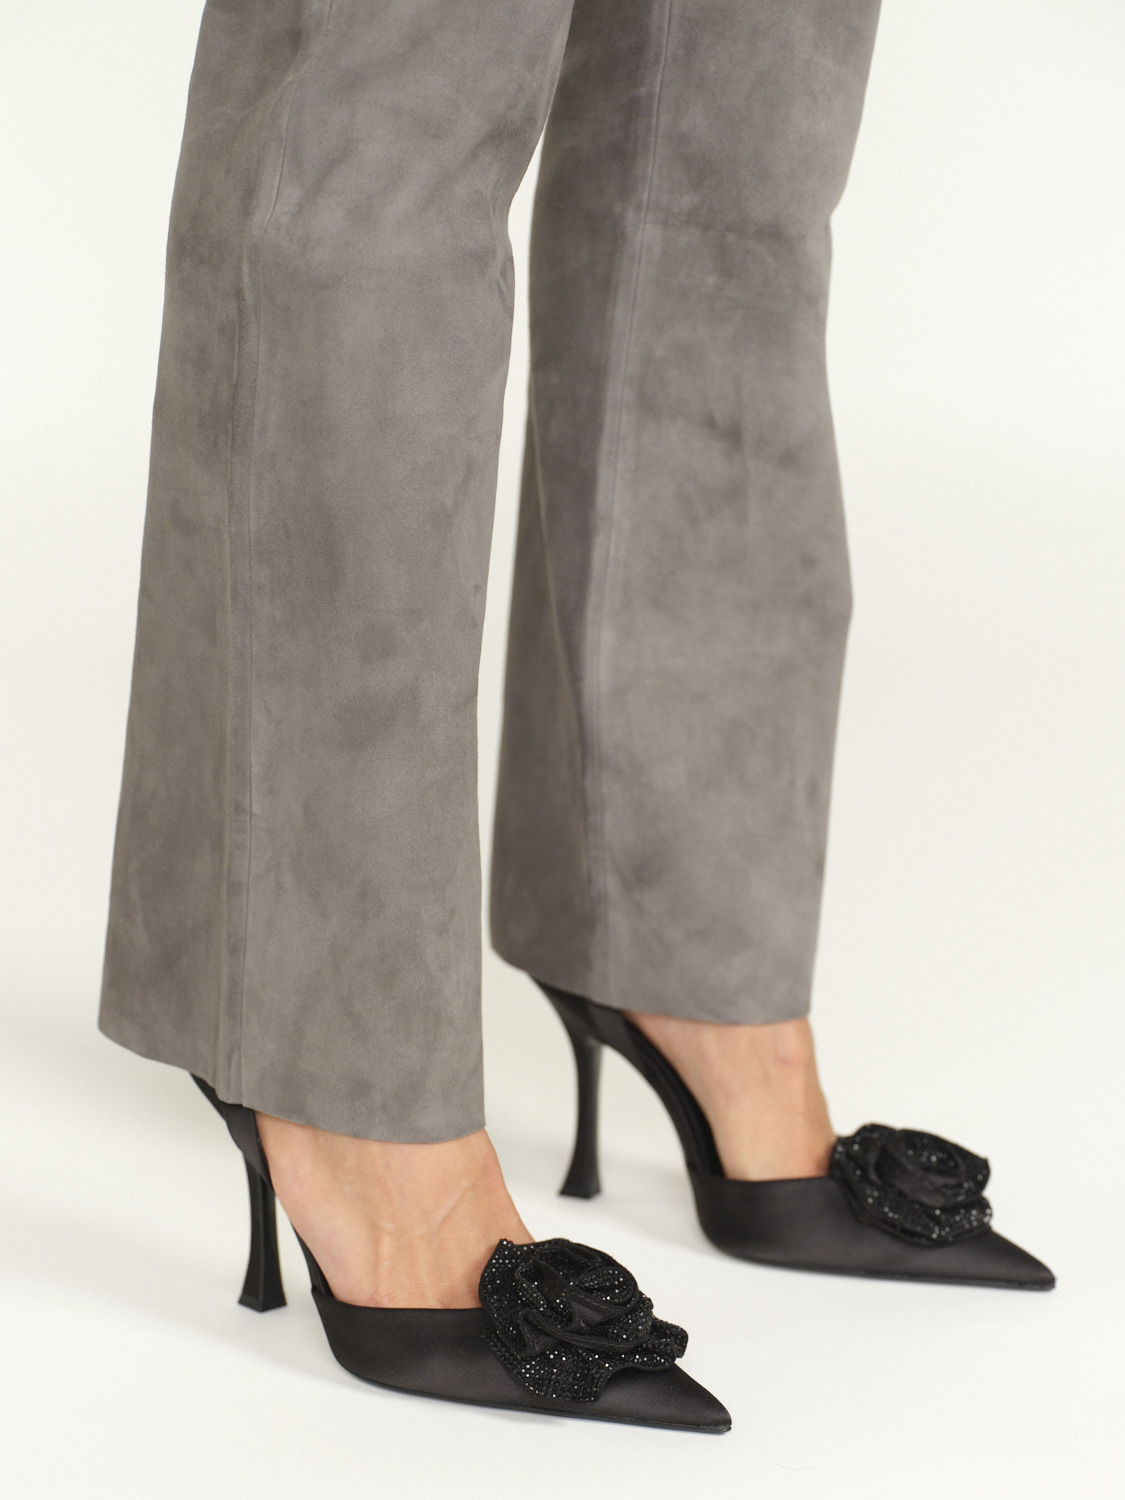 Iris von Arnim Goatskin trousers – Ziegenleder-Hose mit elastischem Bund  braun 34